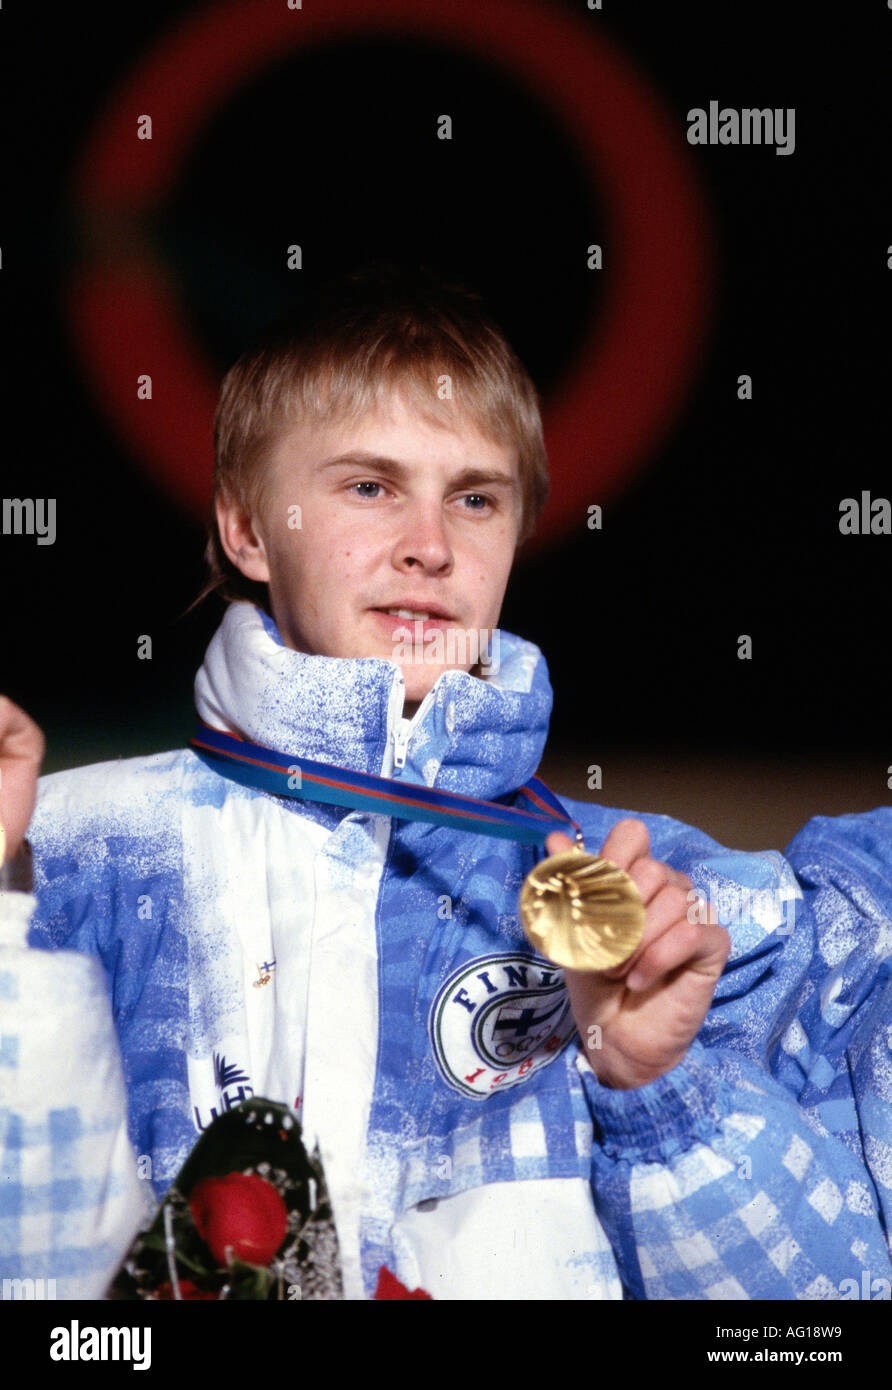 Nykänen, Matti, * 17.7.1963, atleta finlandese (salto con gli sci), ritratto, olimpico invernale, Giochi olimpici, Calgary, 1988, Foto Stock